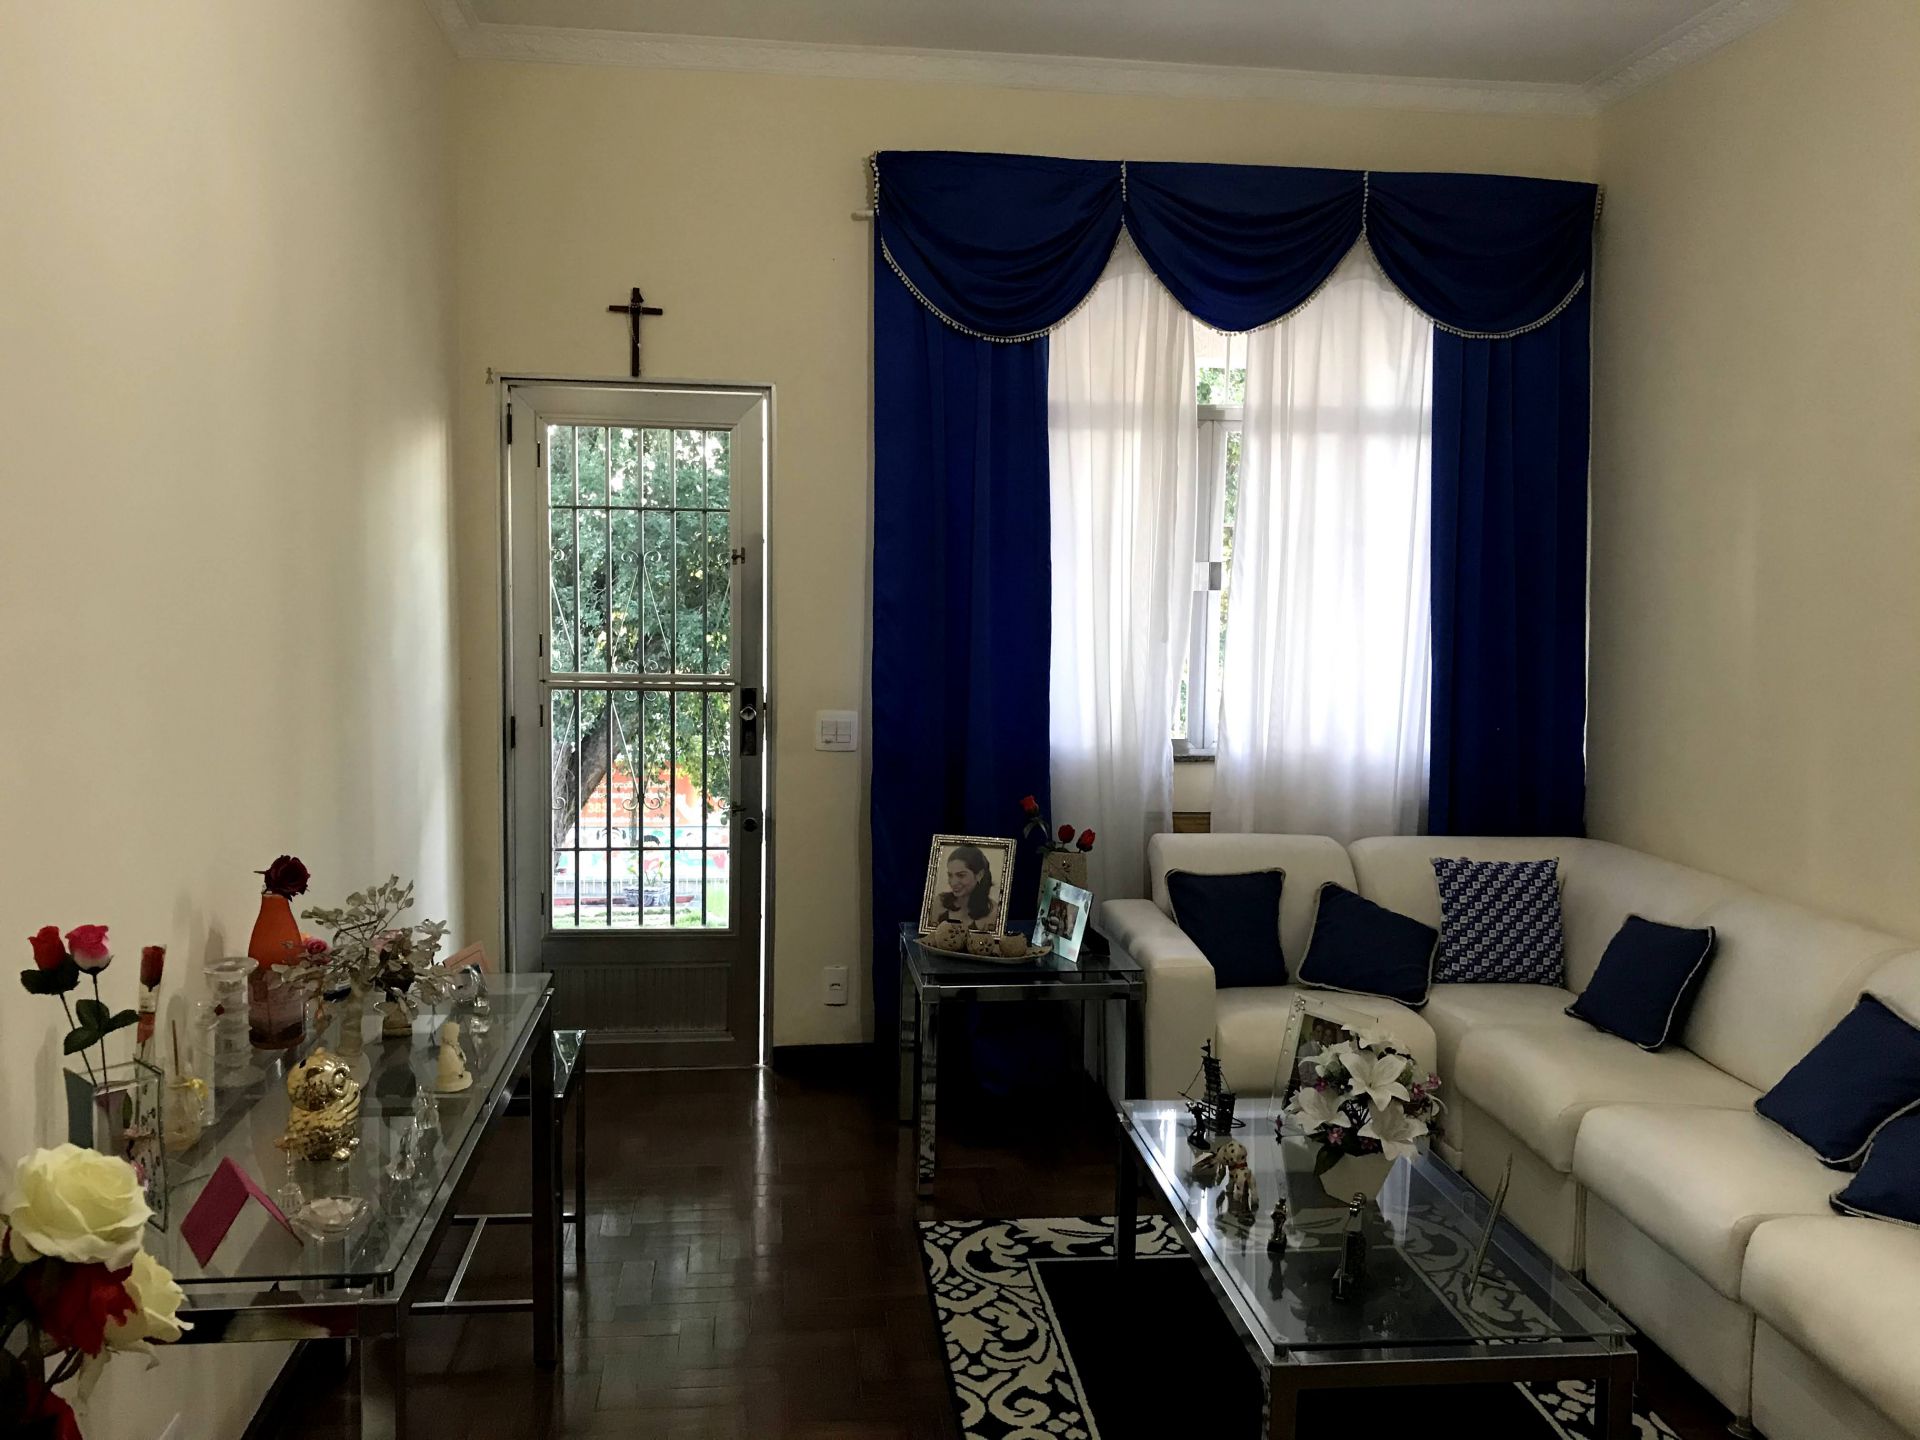 FOTO 5 - Casa 3 quartos à venda Vila Valqueire, Rio de Janeiro - R$ 890.000 - RF269 - 6